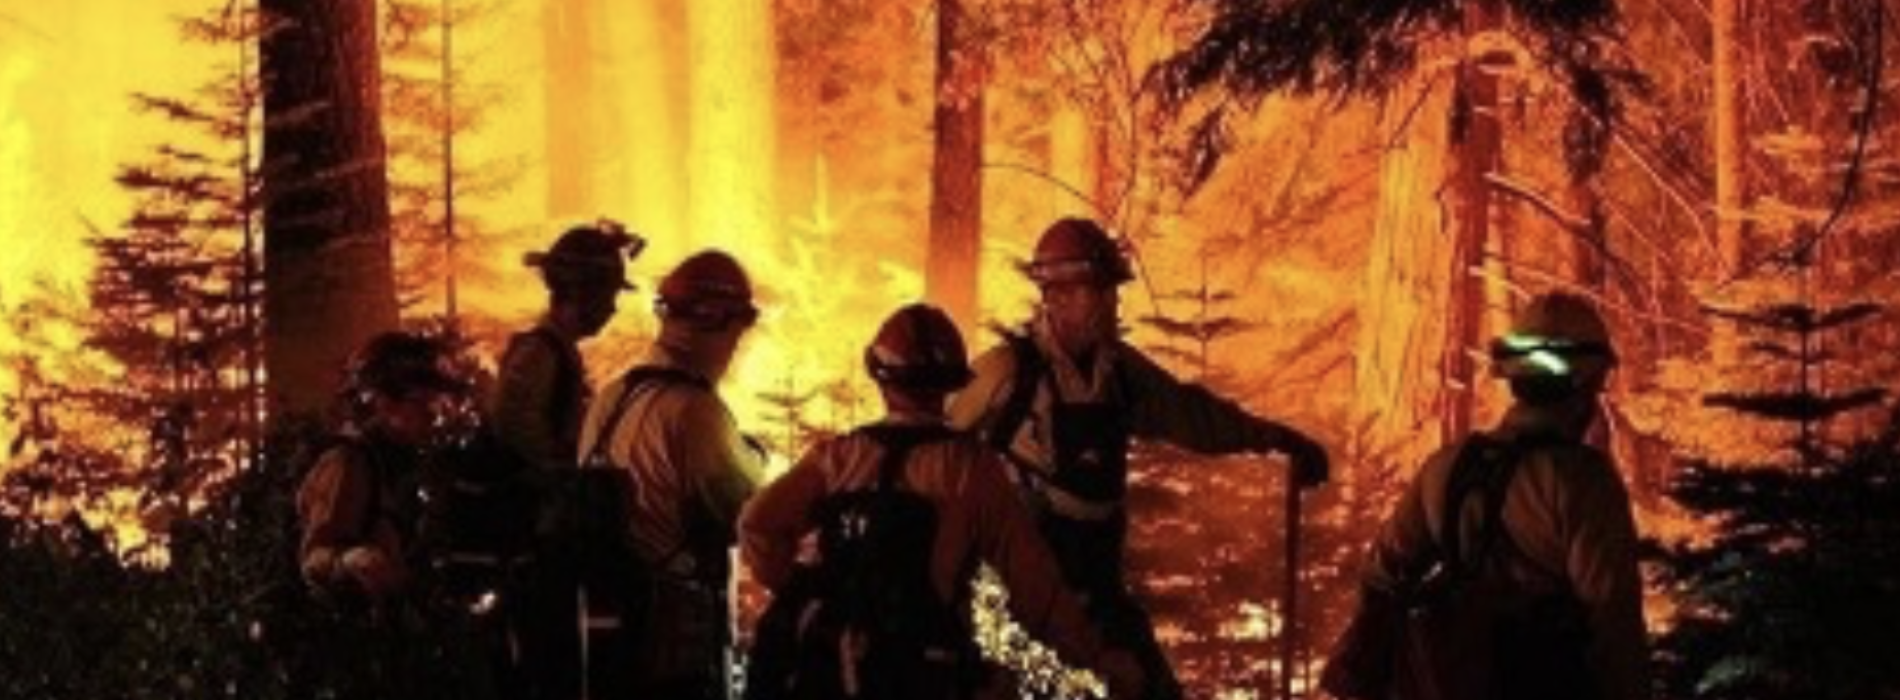 Incendio consume cientos de hectáreas de bosque en Oaxaca